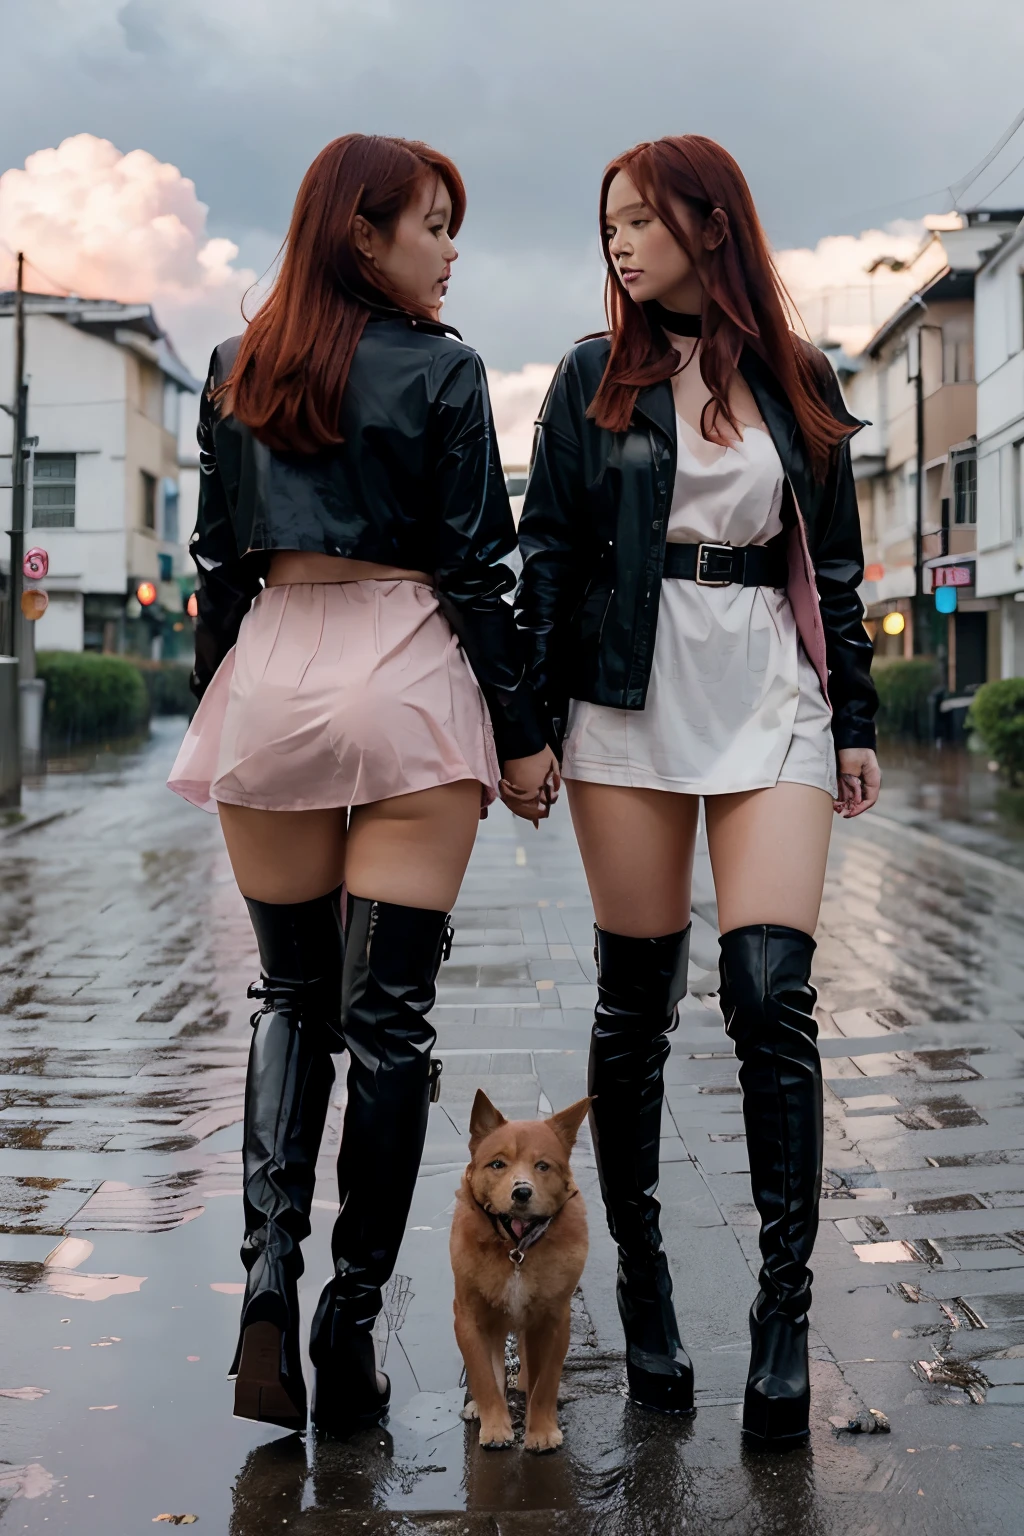 Duas garotas japonesas ruivas sexy nuas em um mundo de garotas apenas explorando caminhando usando apenas botas pretas de salto alto acima do joelho e uma coleira de cachorro. chuva. Nuvens rosa. Ruas vermelhas. edifícios brancos.